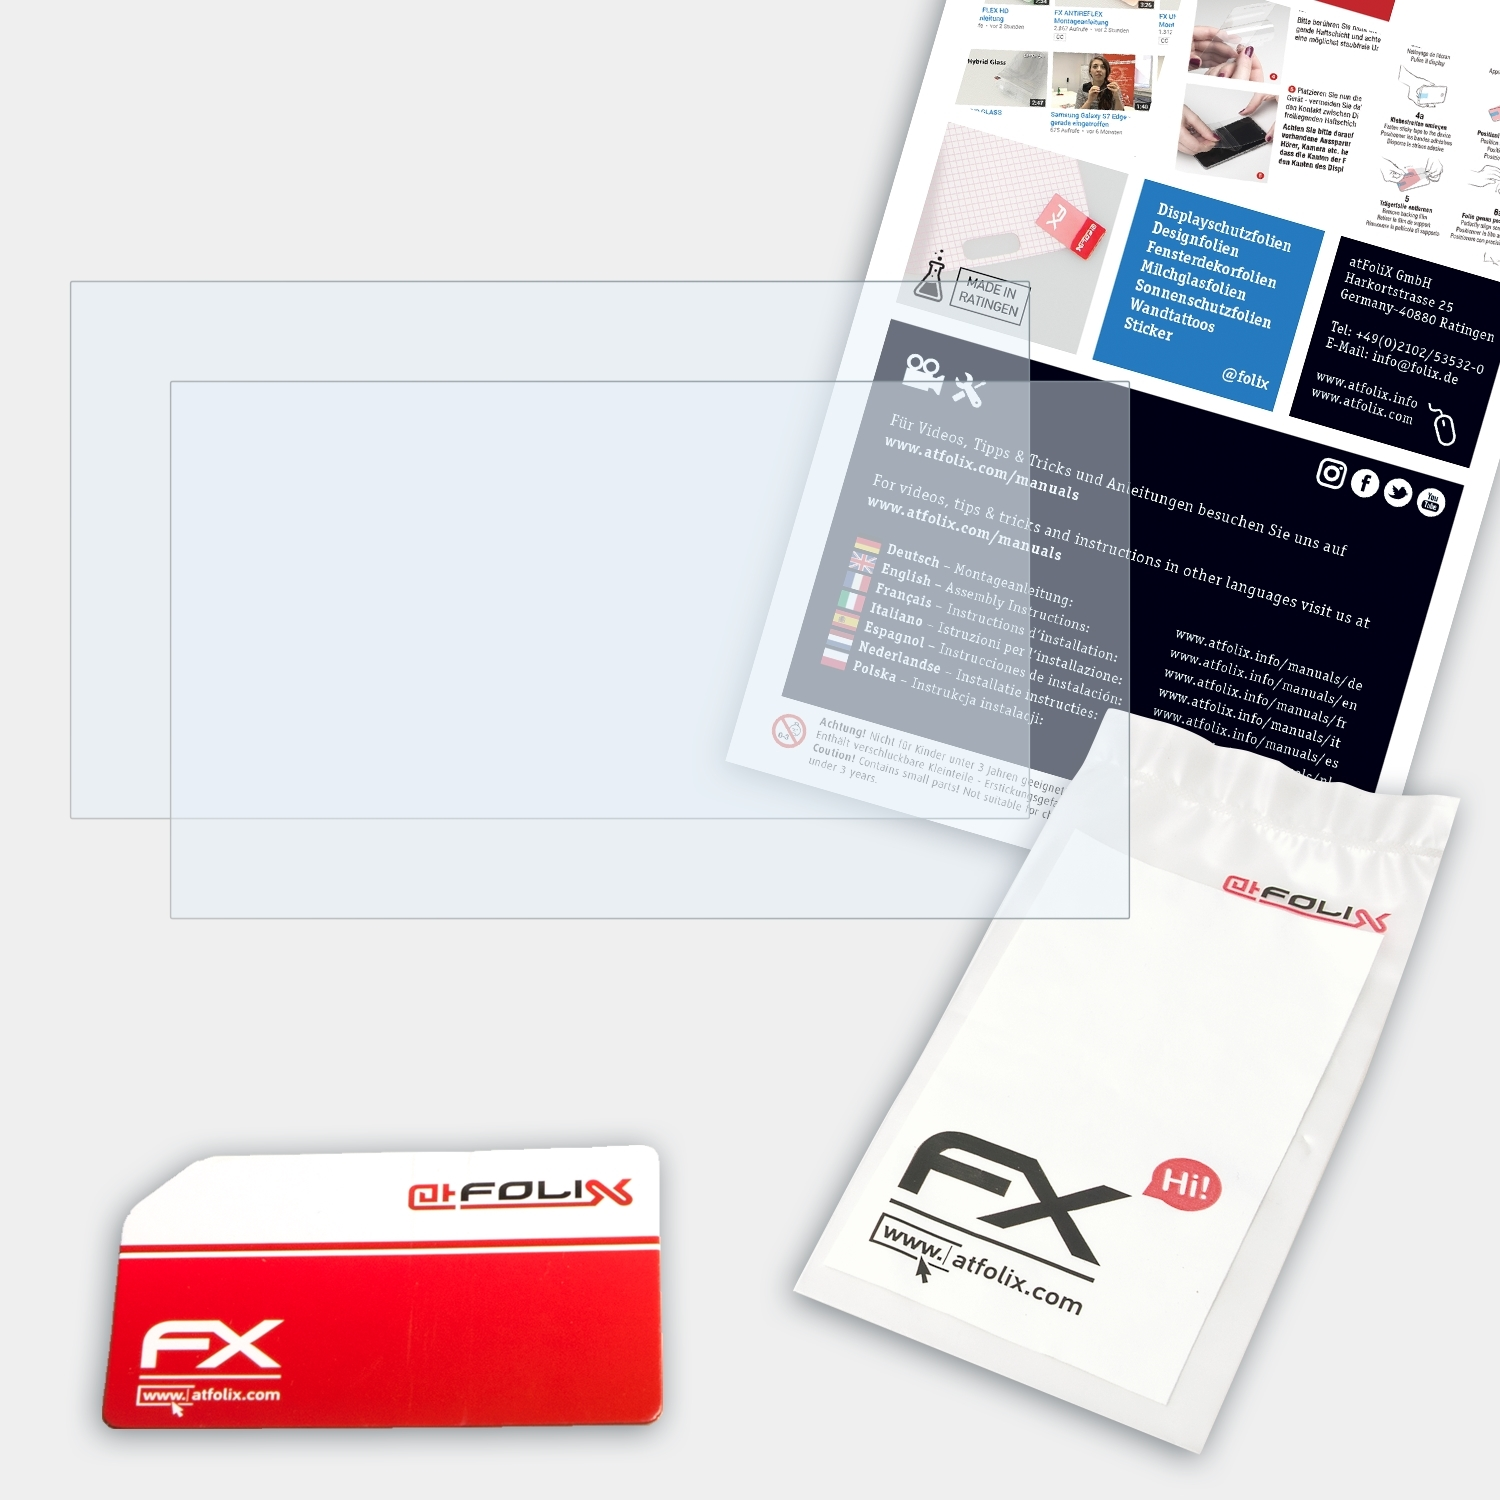 ATFOLIX 2x FX-Clear 14) Trendbook Displayschutz(für Odys